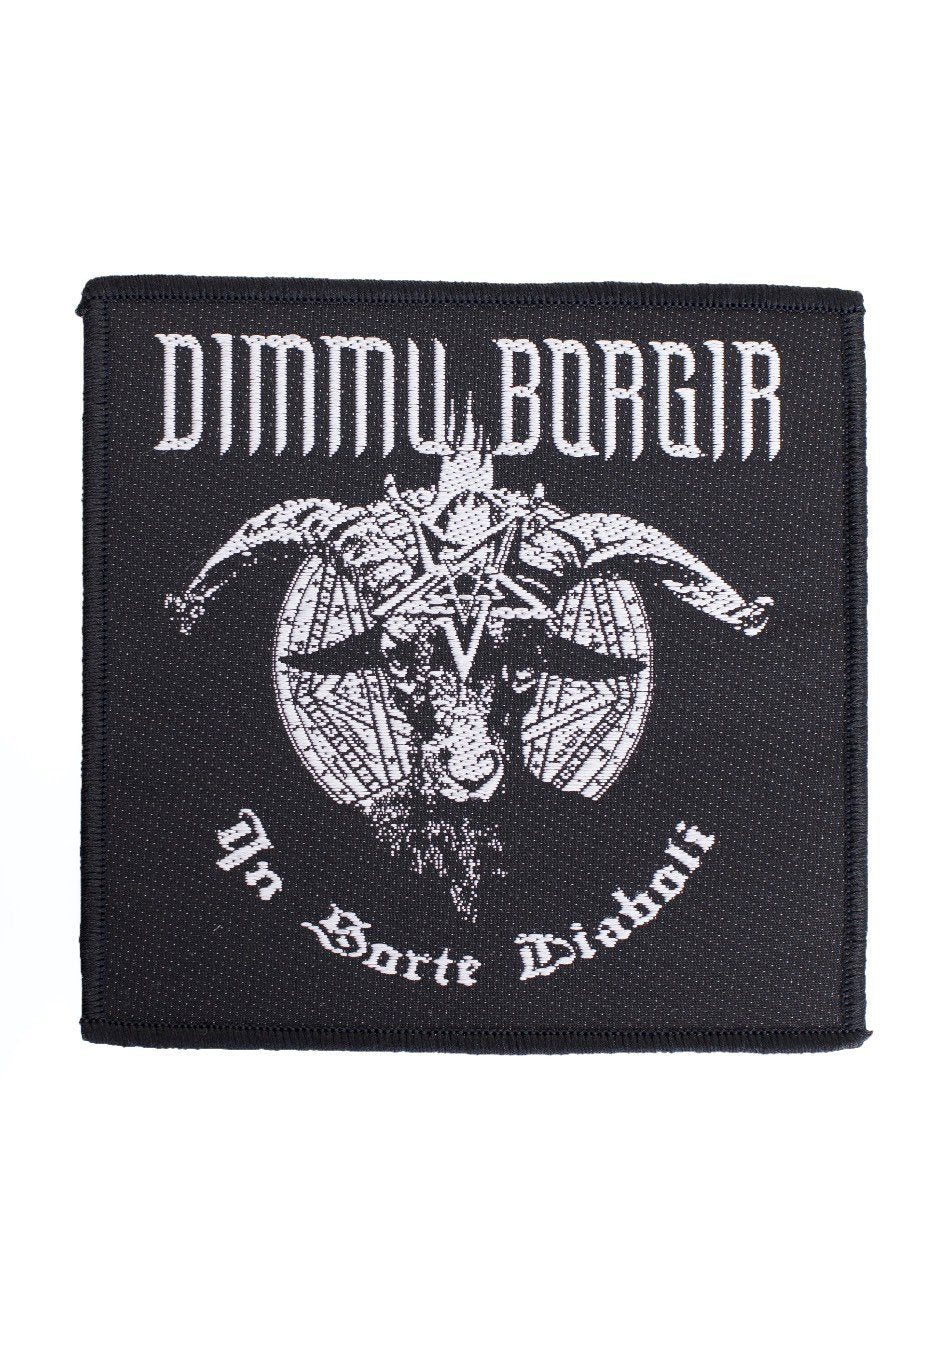 Dimmu Borgir - In Sorte Diaboli - Patch